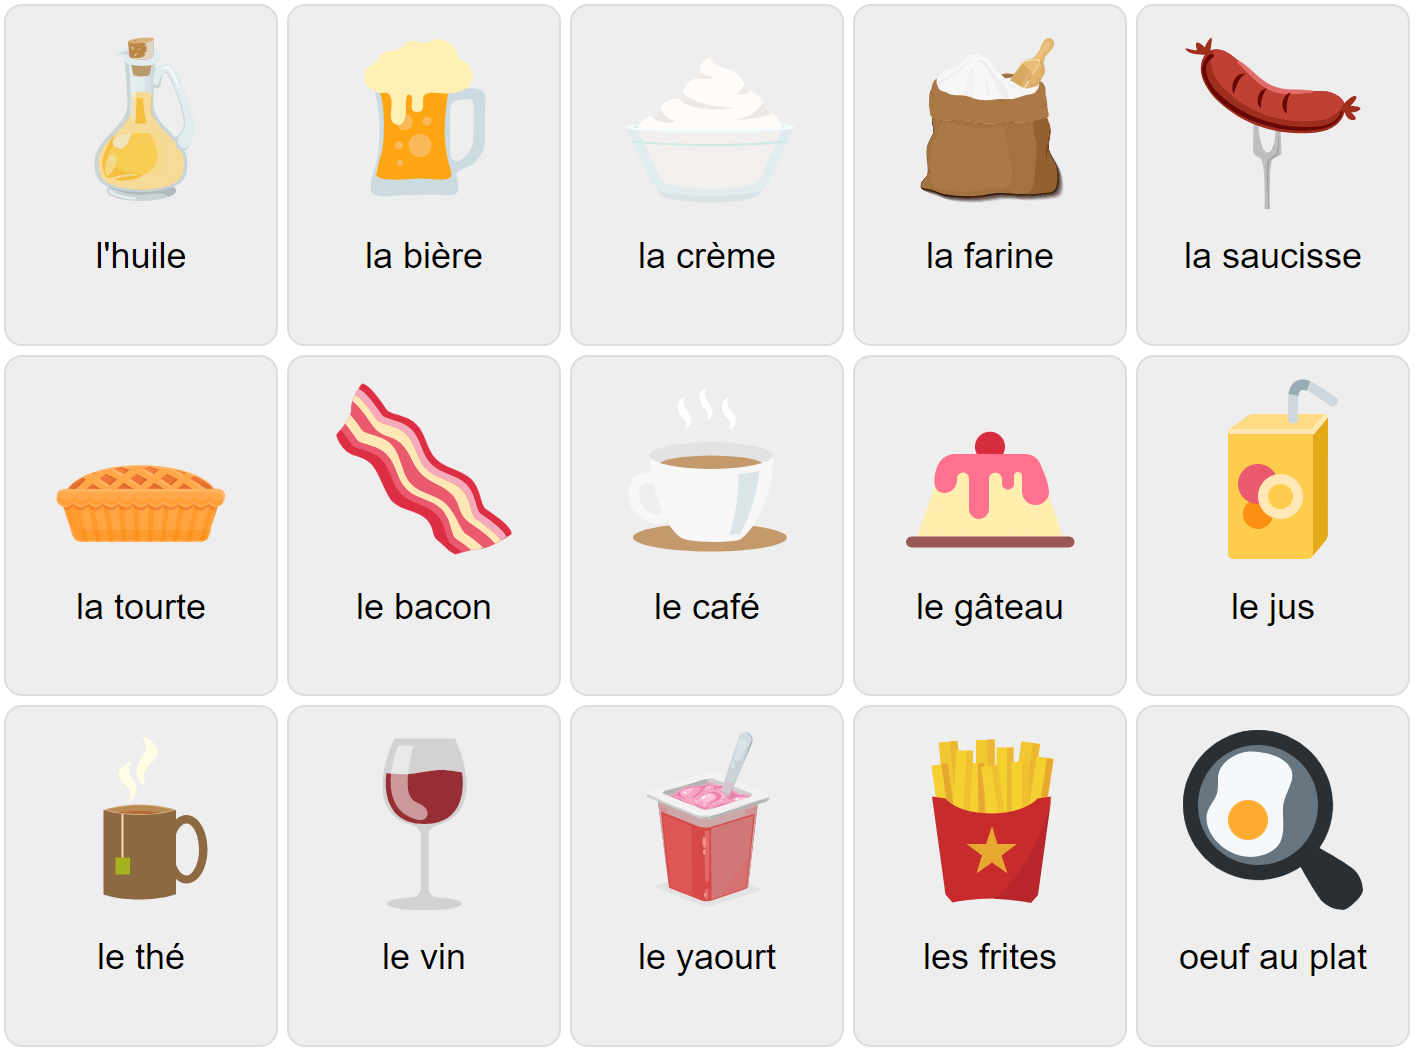 Їжа французькою мовою 2